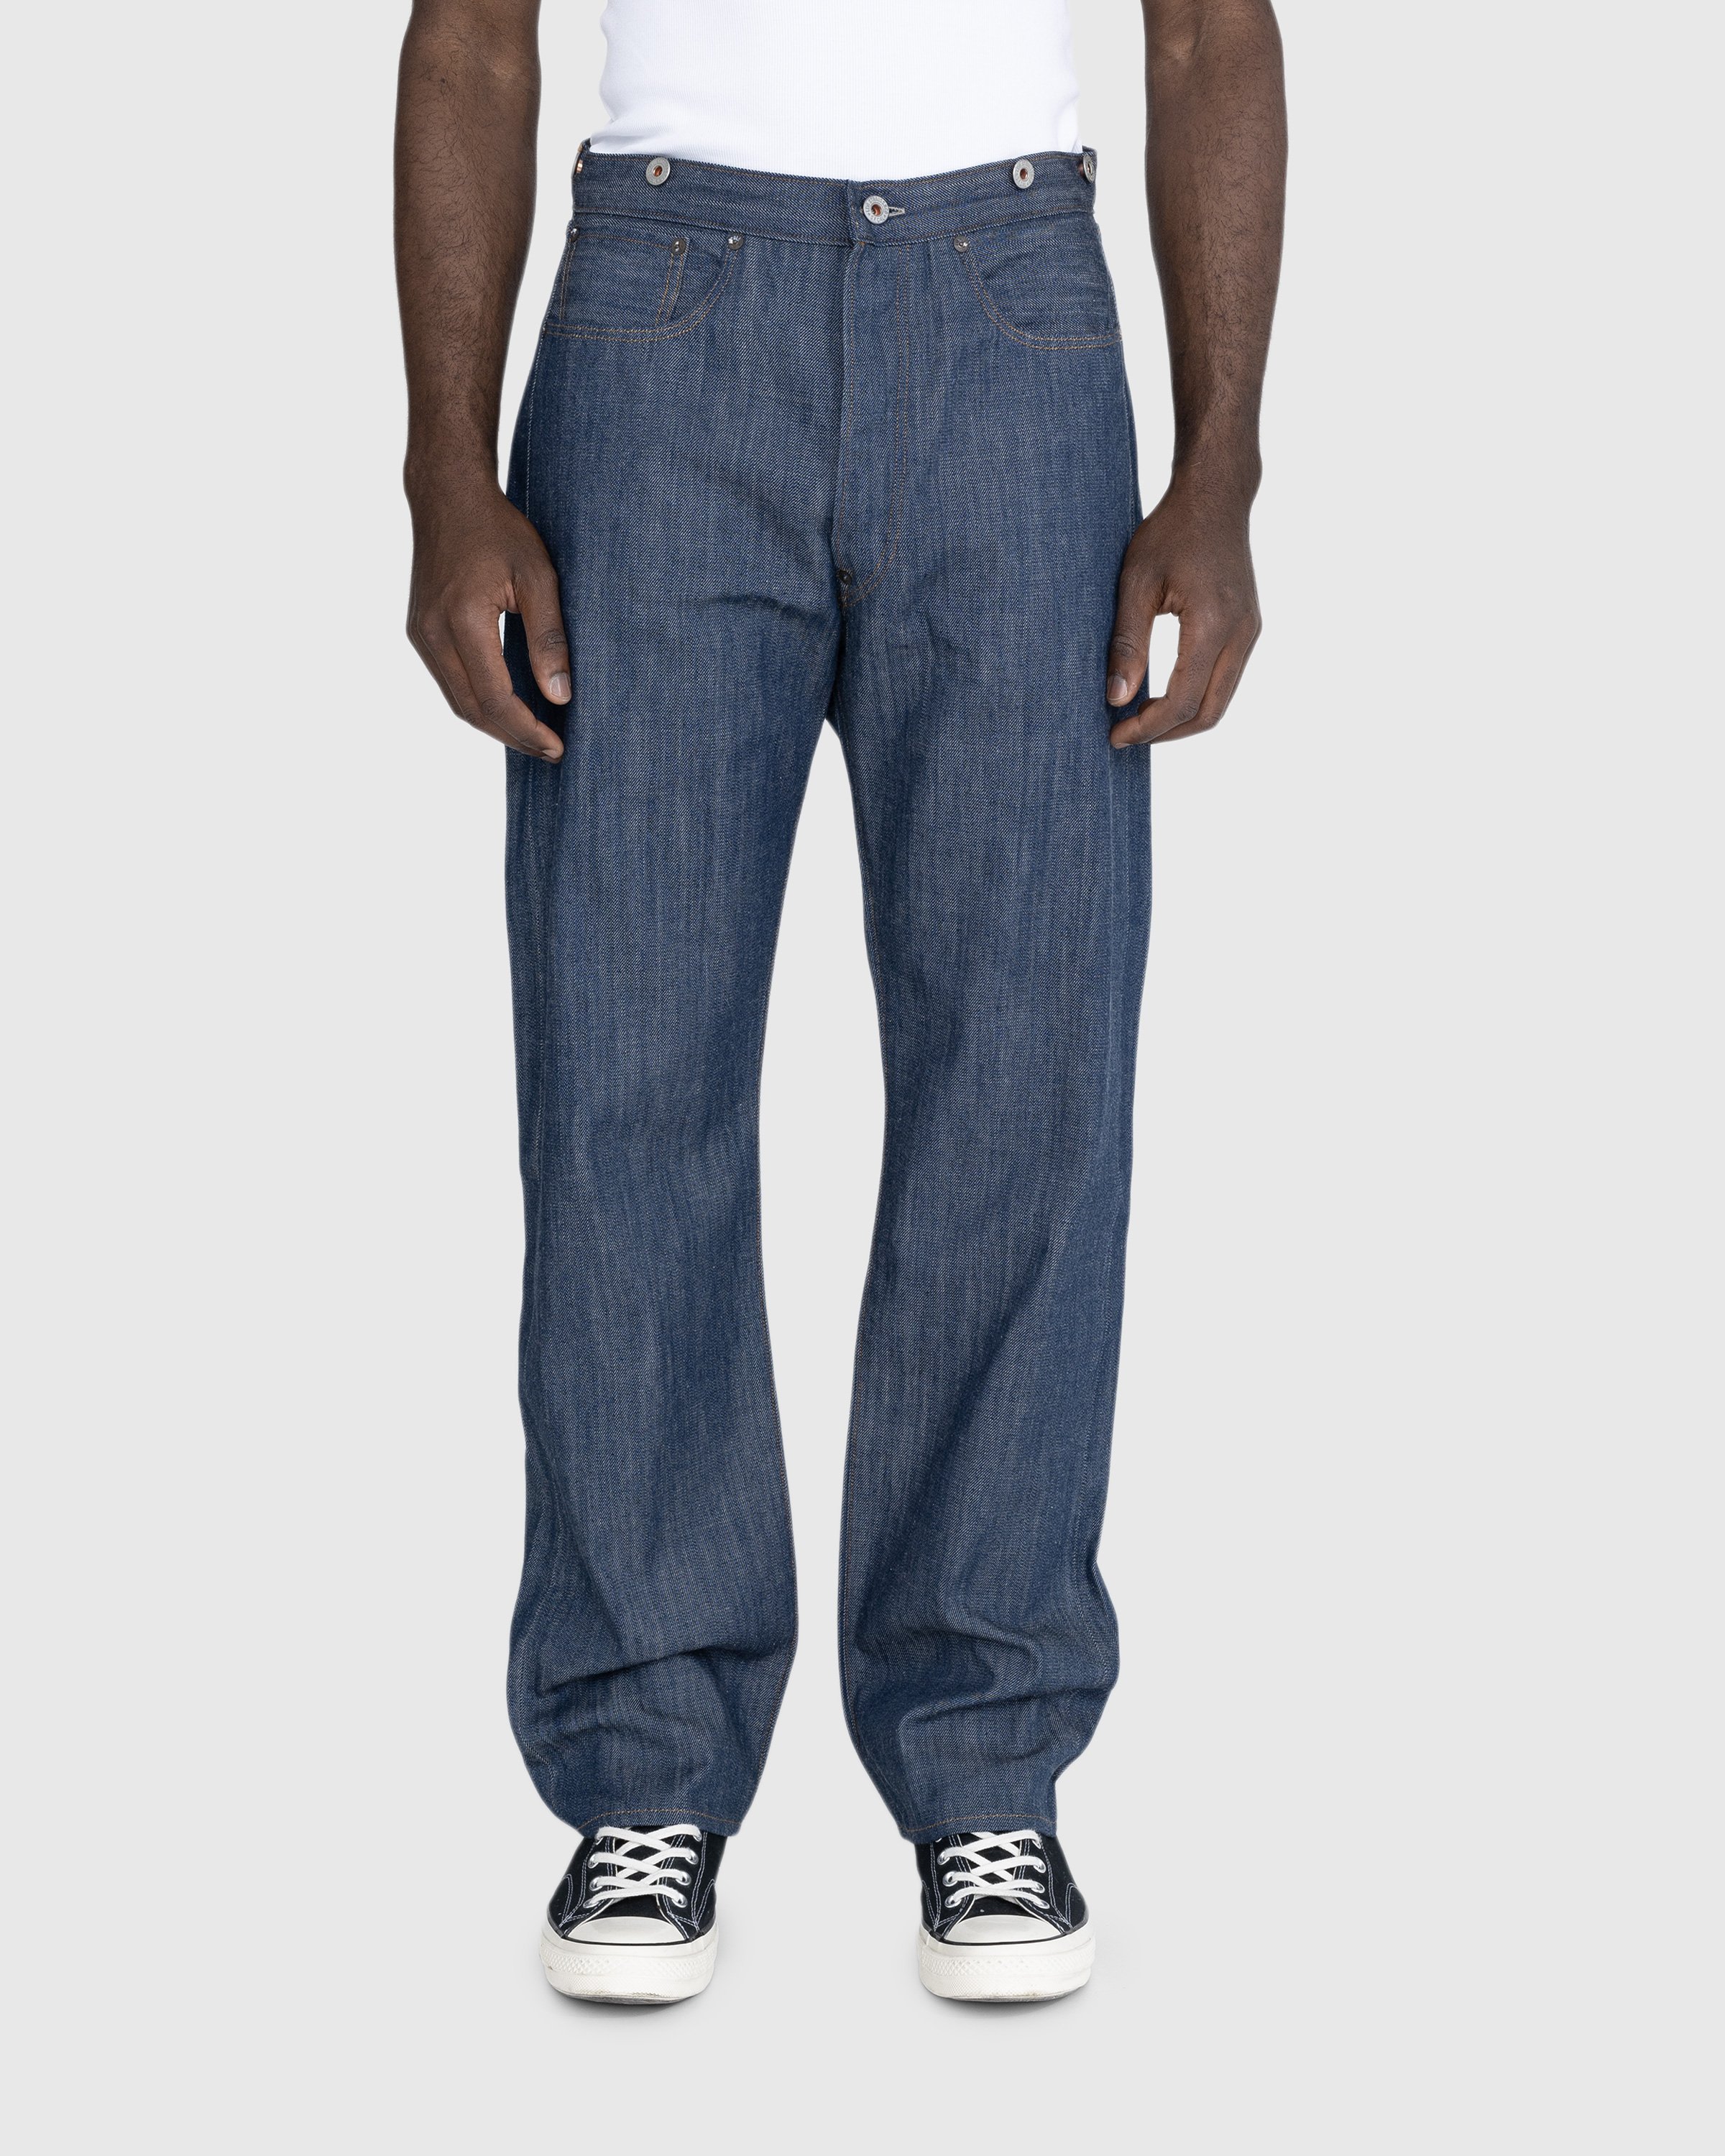 Levi's - 1890 501 Jeans Dark Indigo Flat Finish - Clothing - Blue - Image 3